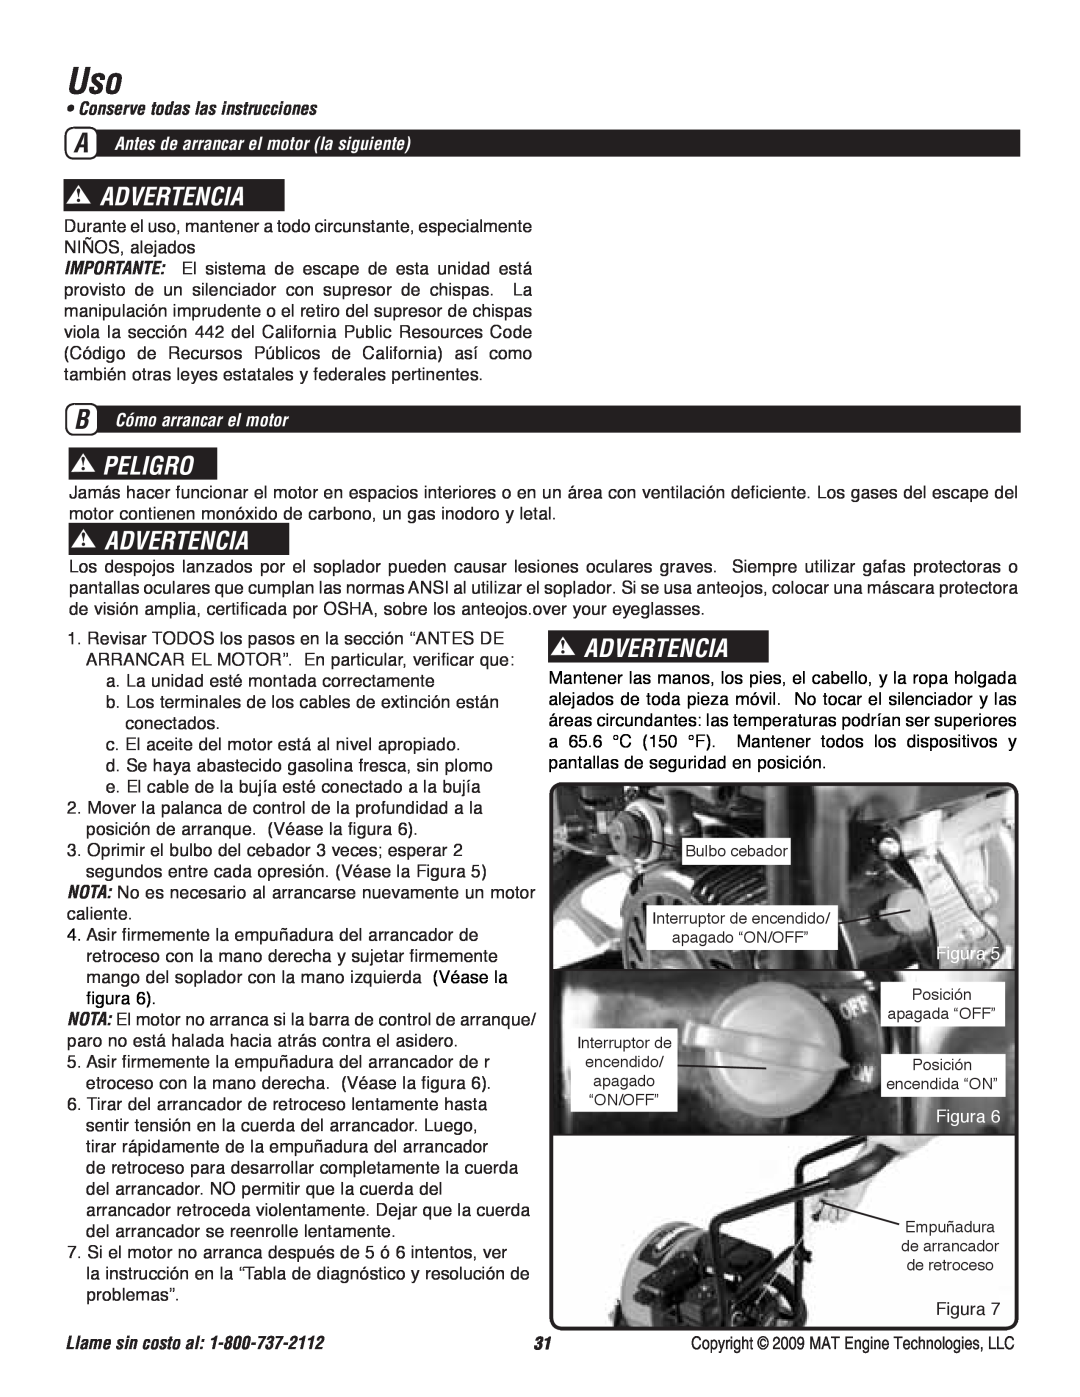 Powermate P-WB-163150-[E] specifications Advertencia, Peligro, • Conserve todas las instrucciones, B Cómo arrancar el motor 